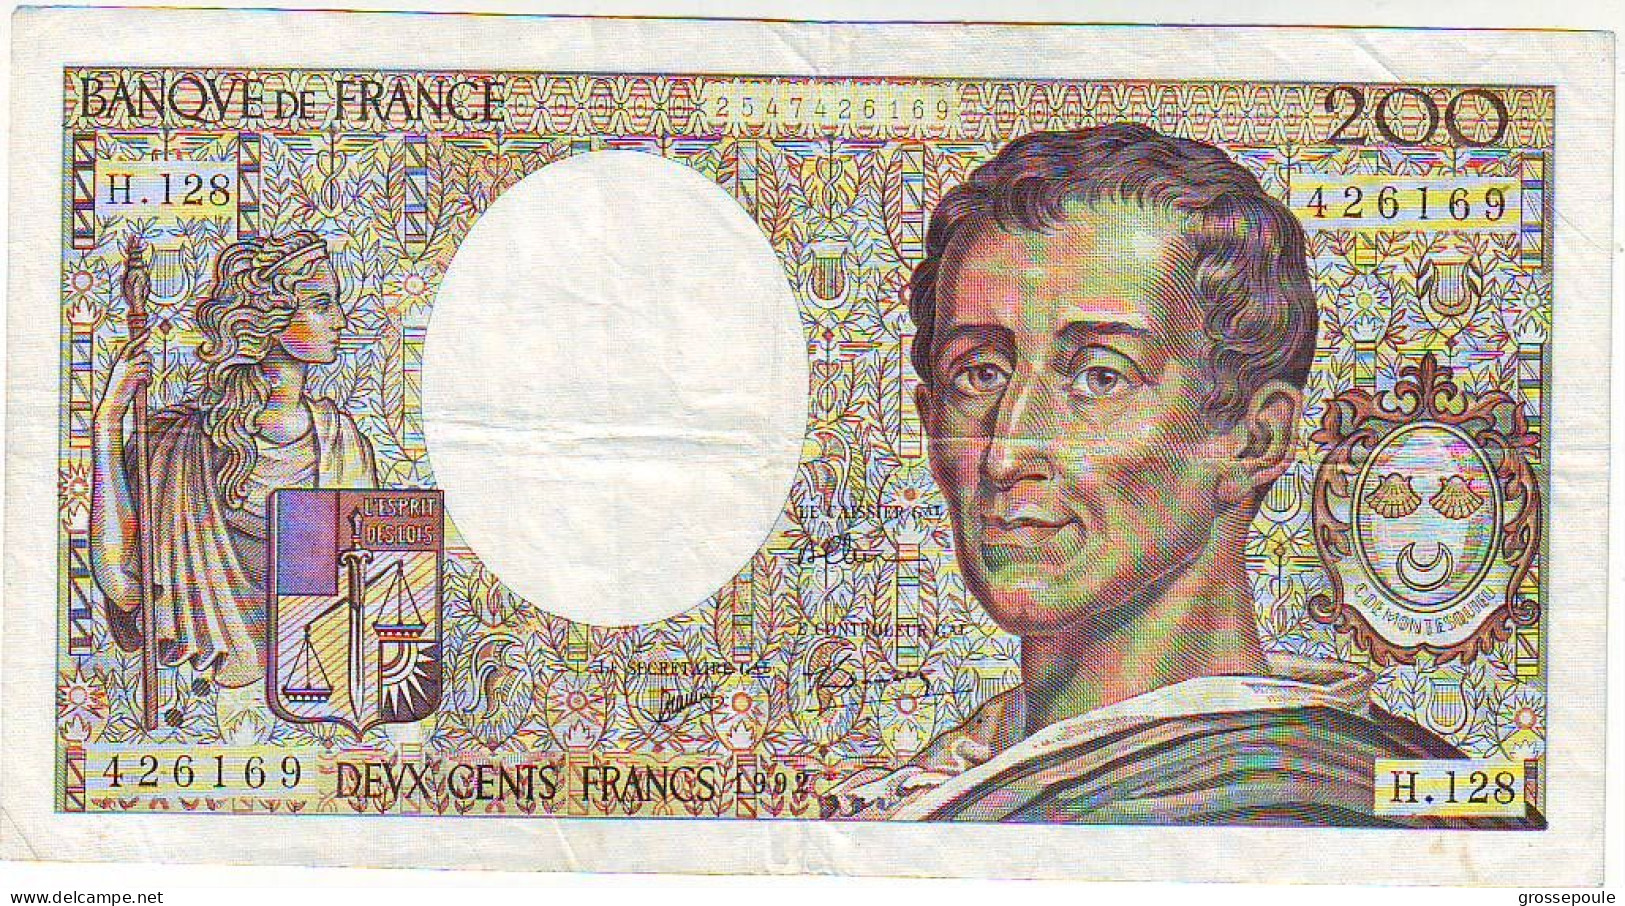 200 FRS MONTESQUIEU - 1992 - H.128 - 426169 -  SUP - 200 F 1981-1994 ''Montesquieu''